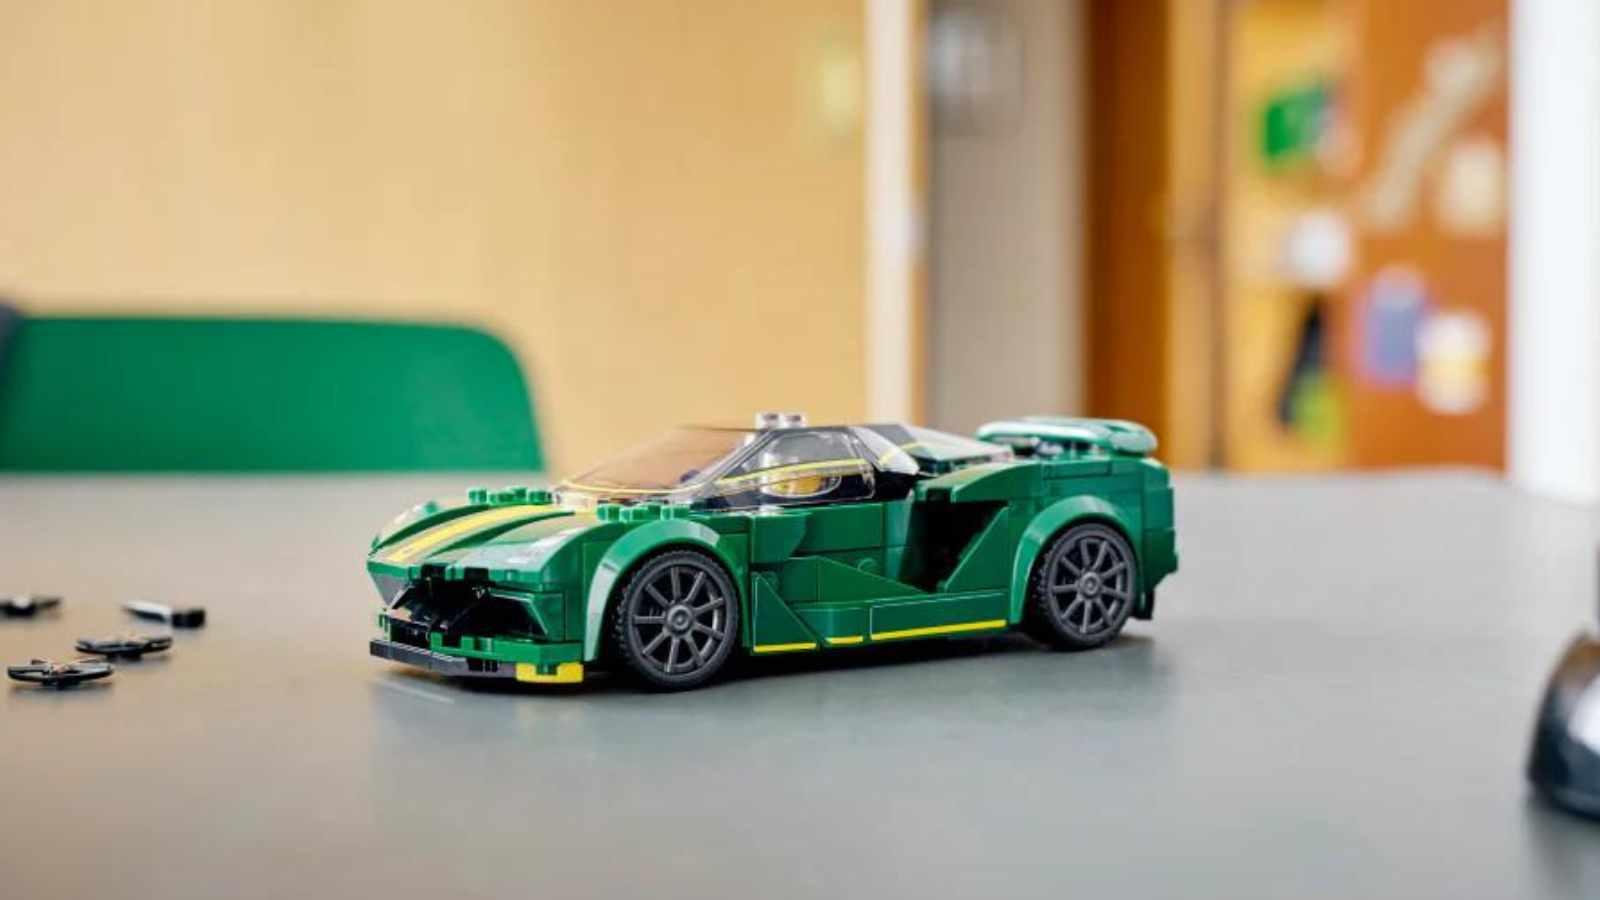 LEGO Lotus Evija on display